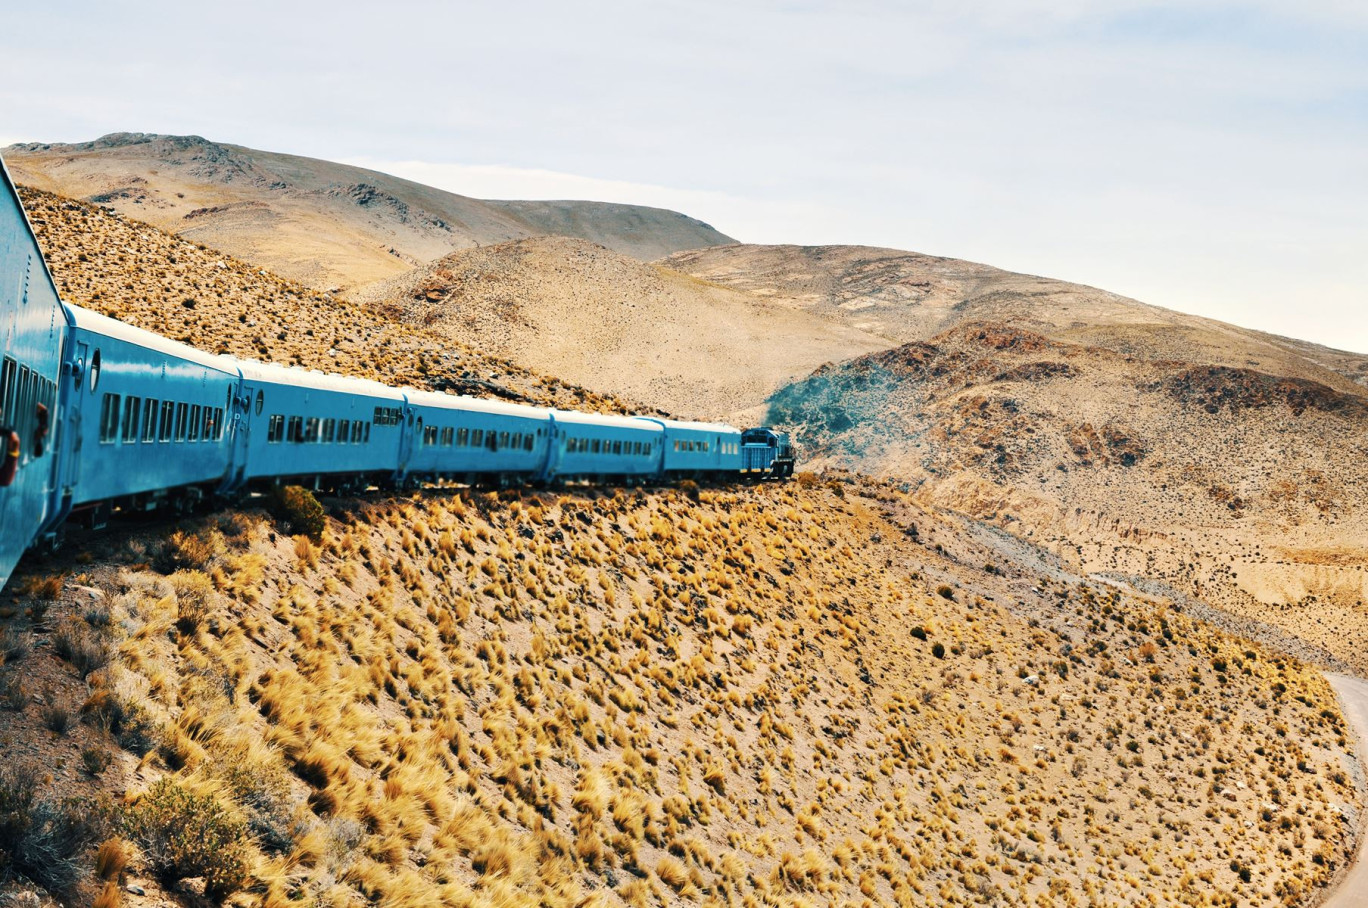 Le célèbre Train des nuages en Argentine. © Jopstock